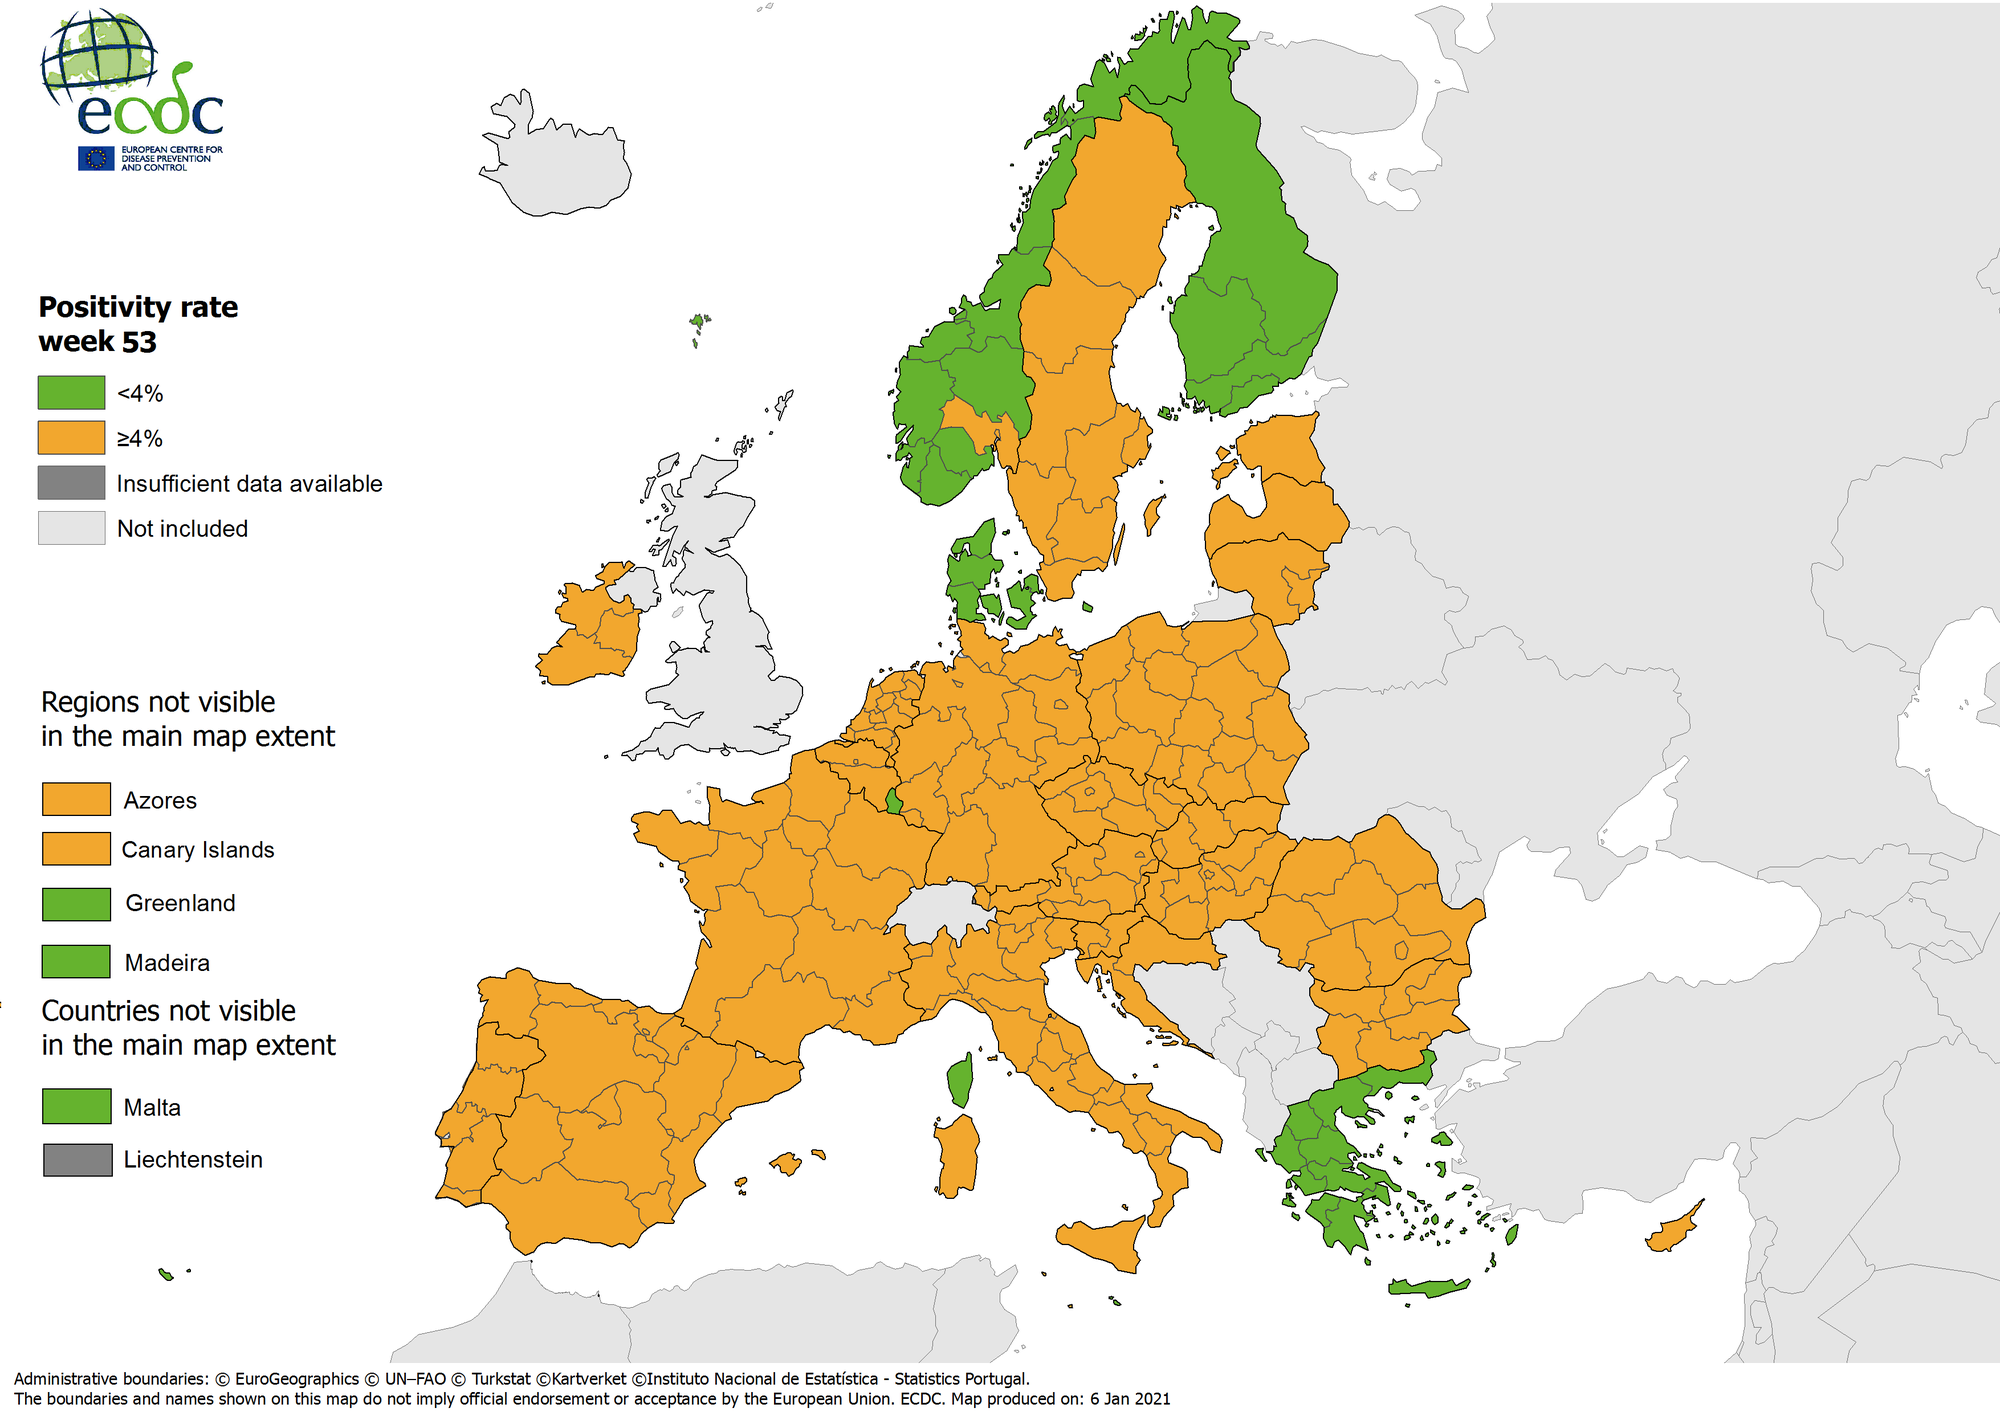 Ο ανανεωμένος χάρτης του ECDC για το ποσοστό θετικότητας στον κορωνοϊό στην Ευρώπη